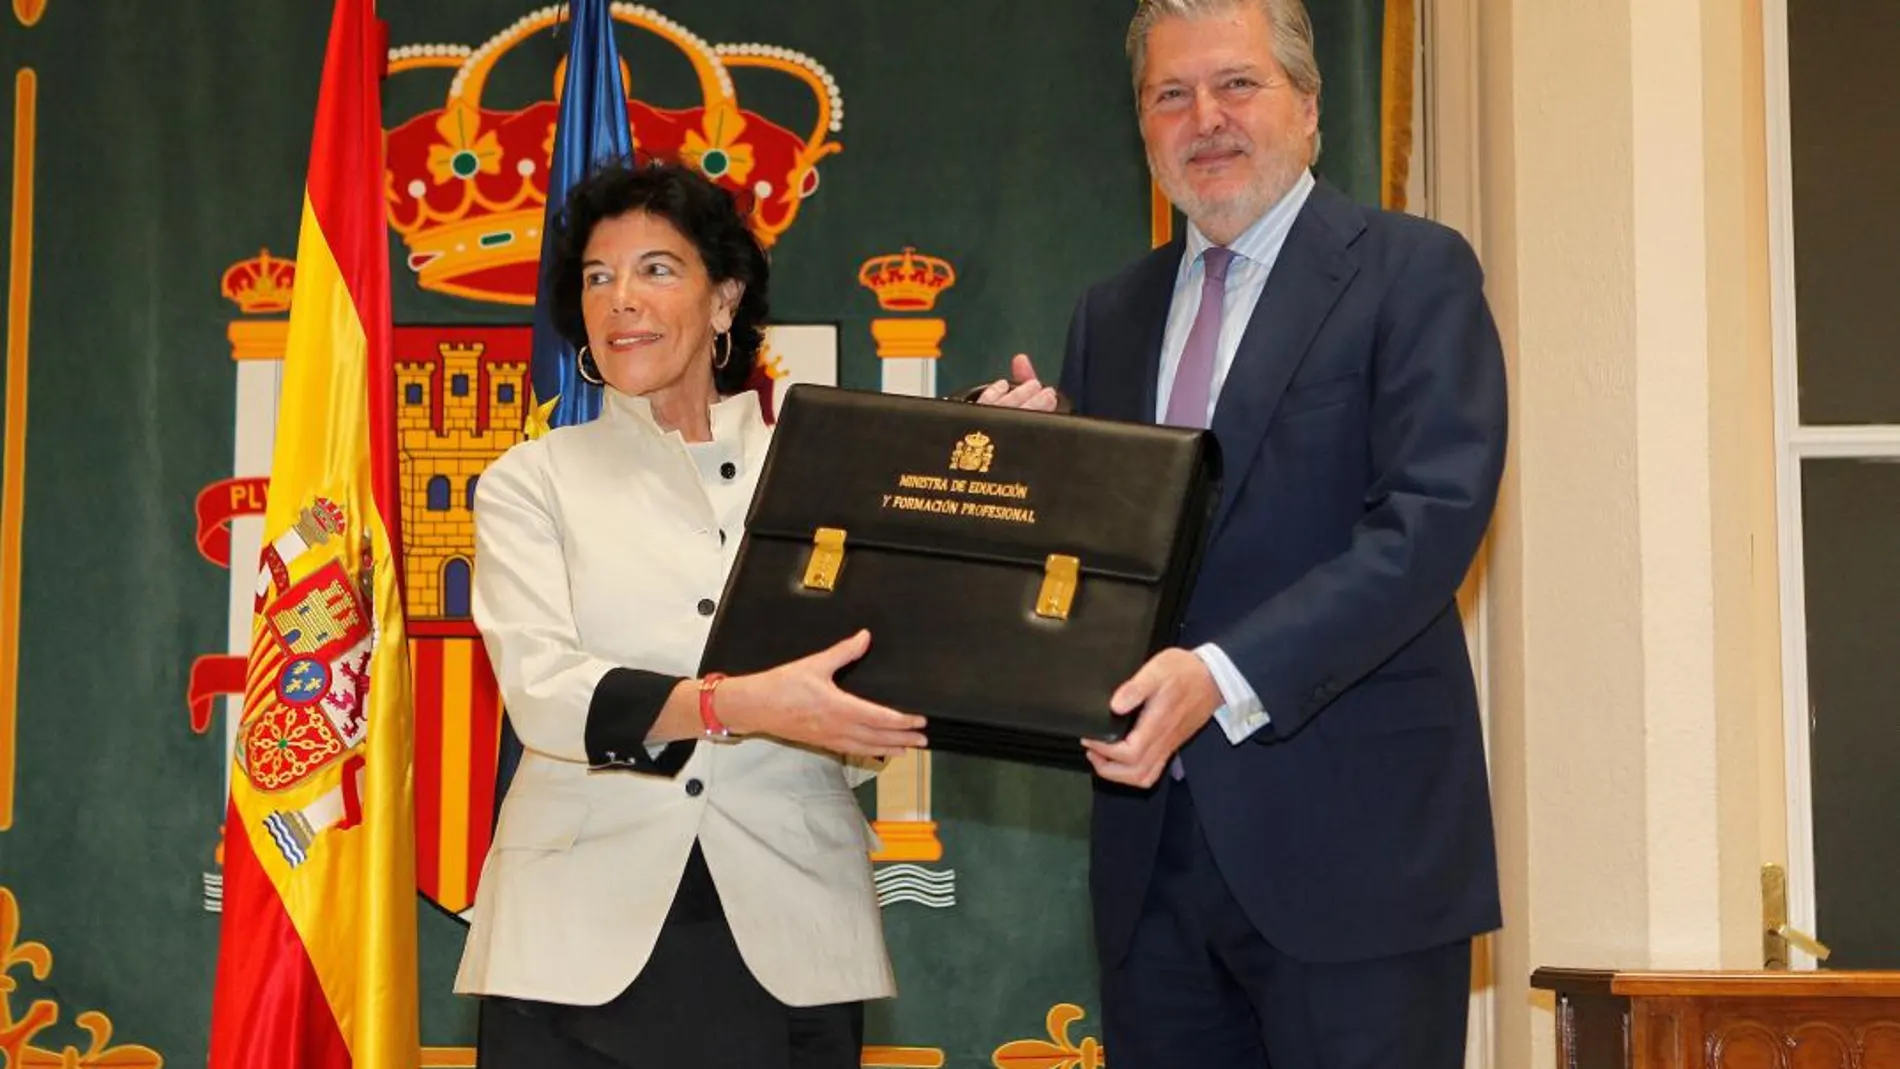 La nueva ministra de Educación y Formación Profesional, Isabel Celaá , recibe la cartera de la que es titular de manos del ministro saliente, Íñigo Méndez de Vigo/Efe